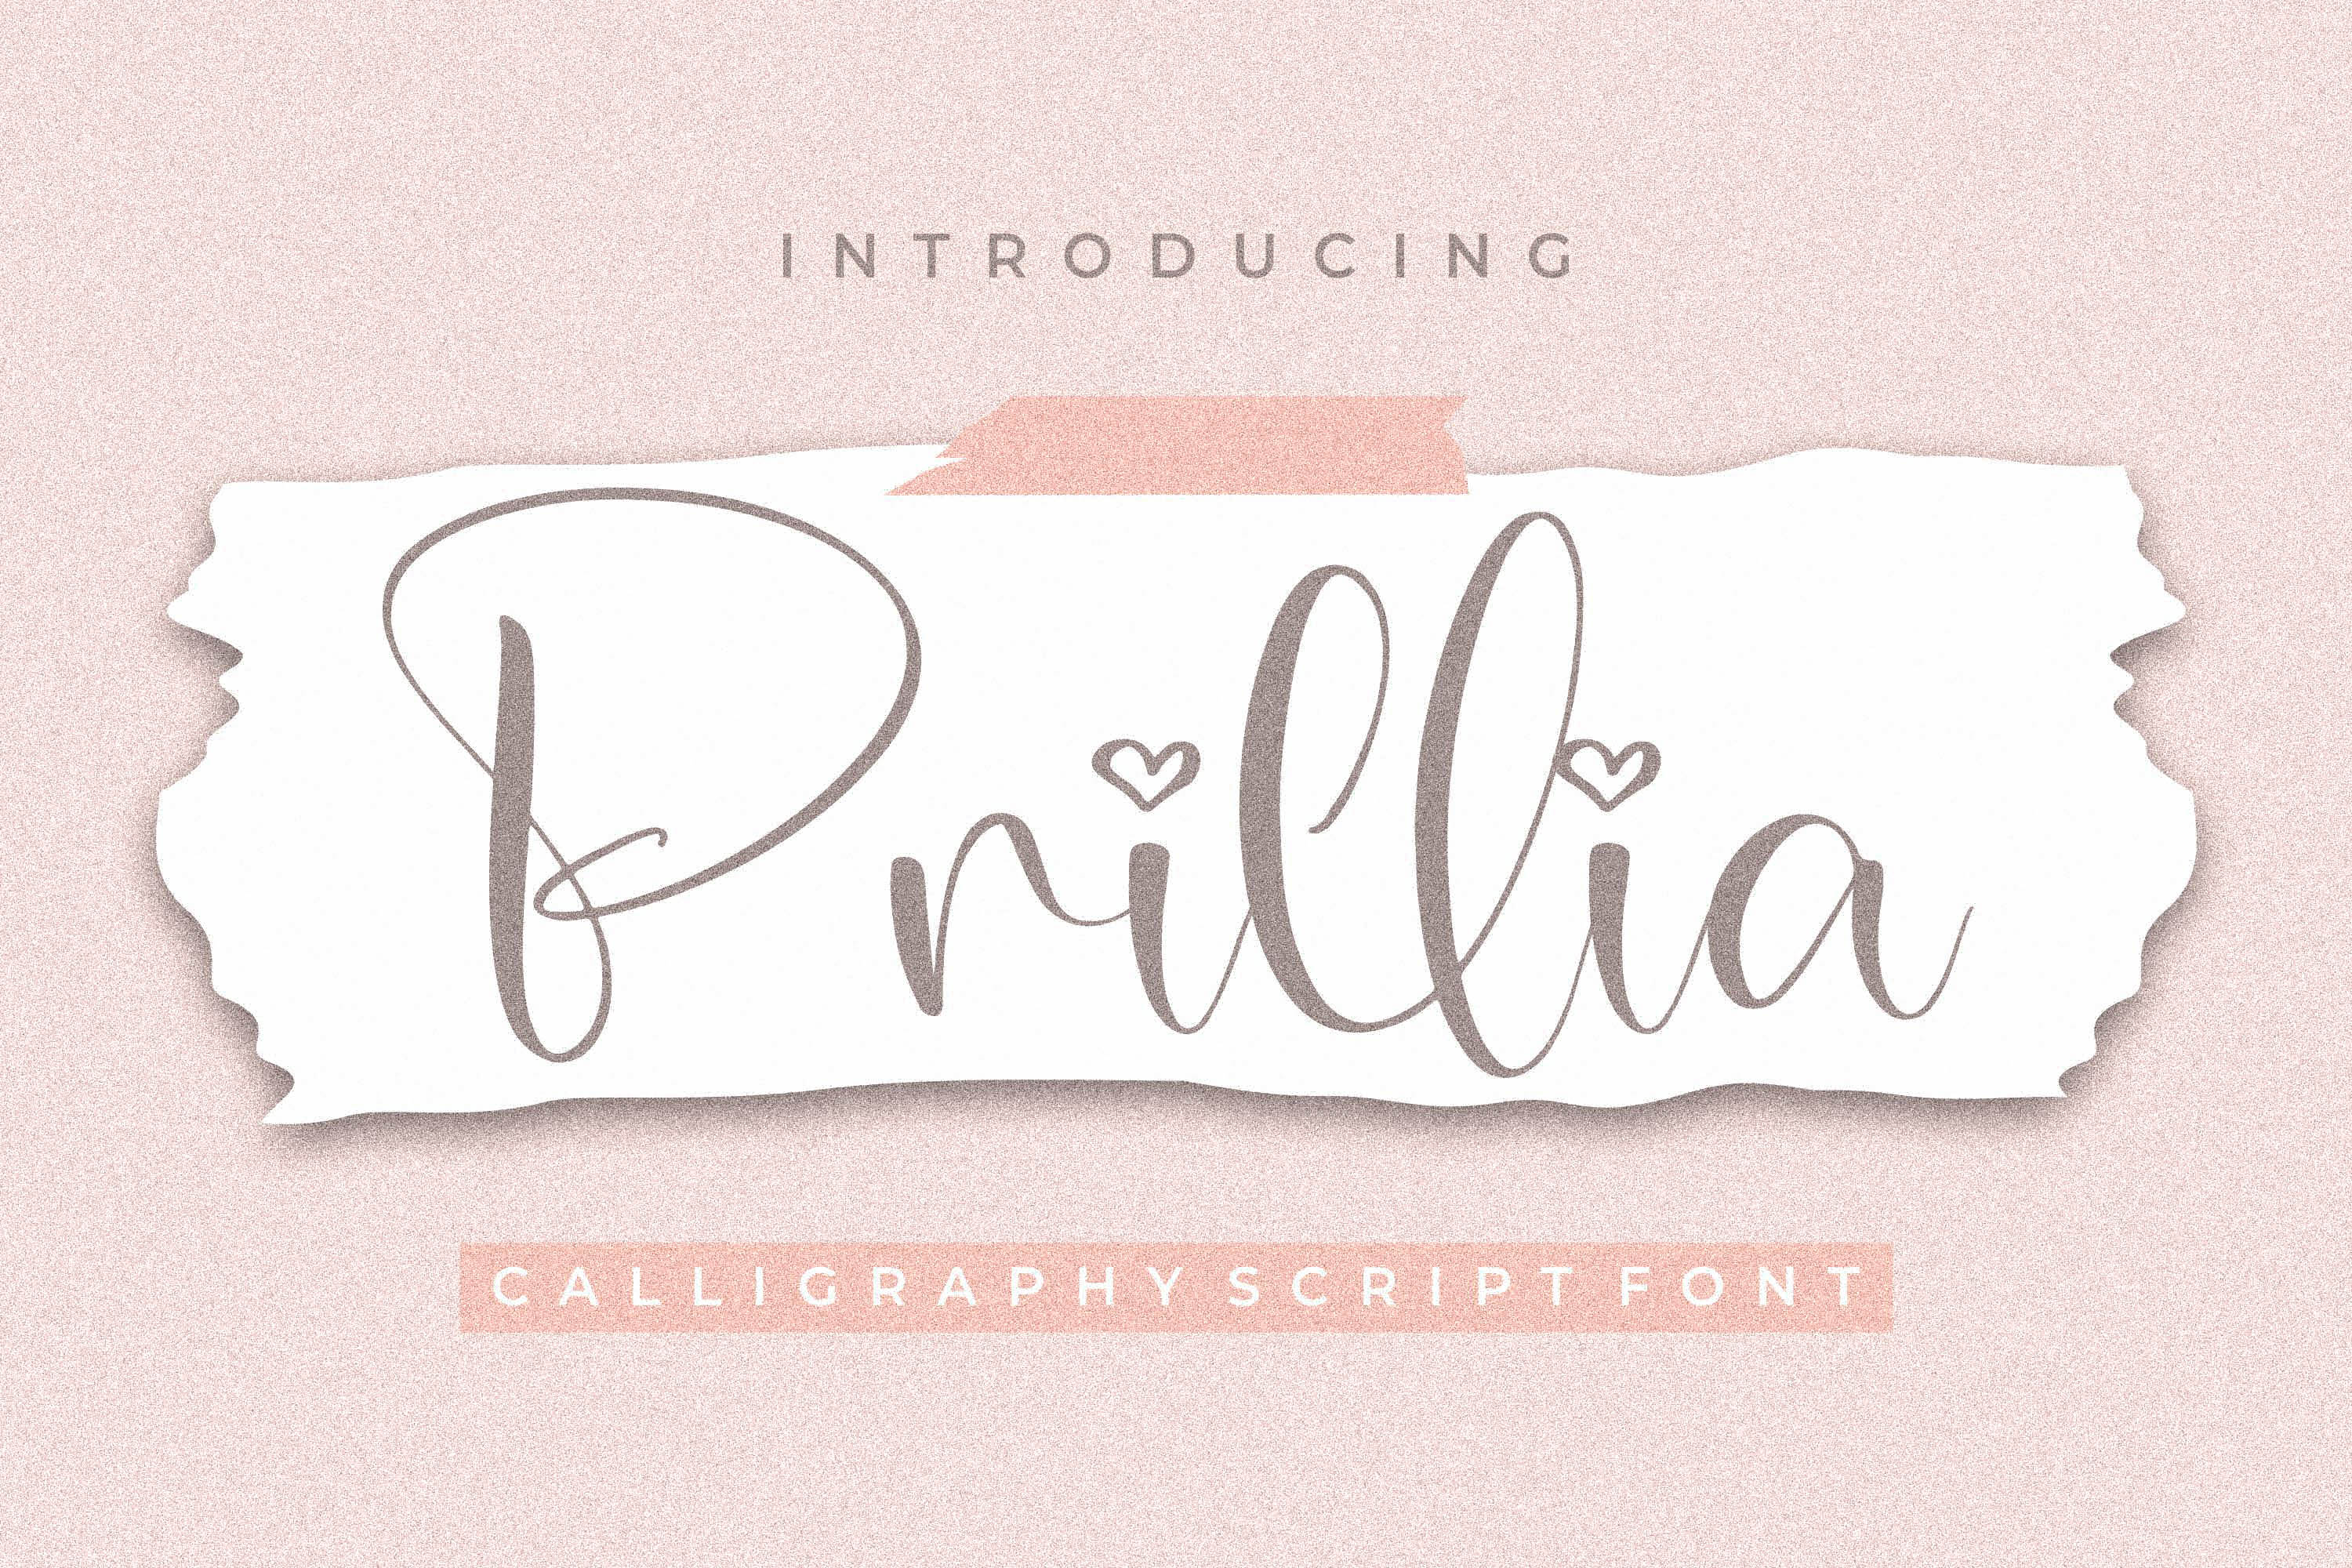 Prillia